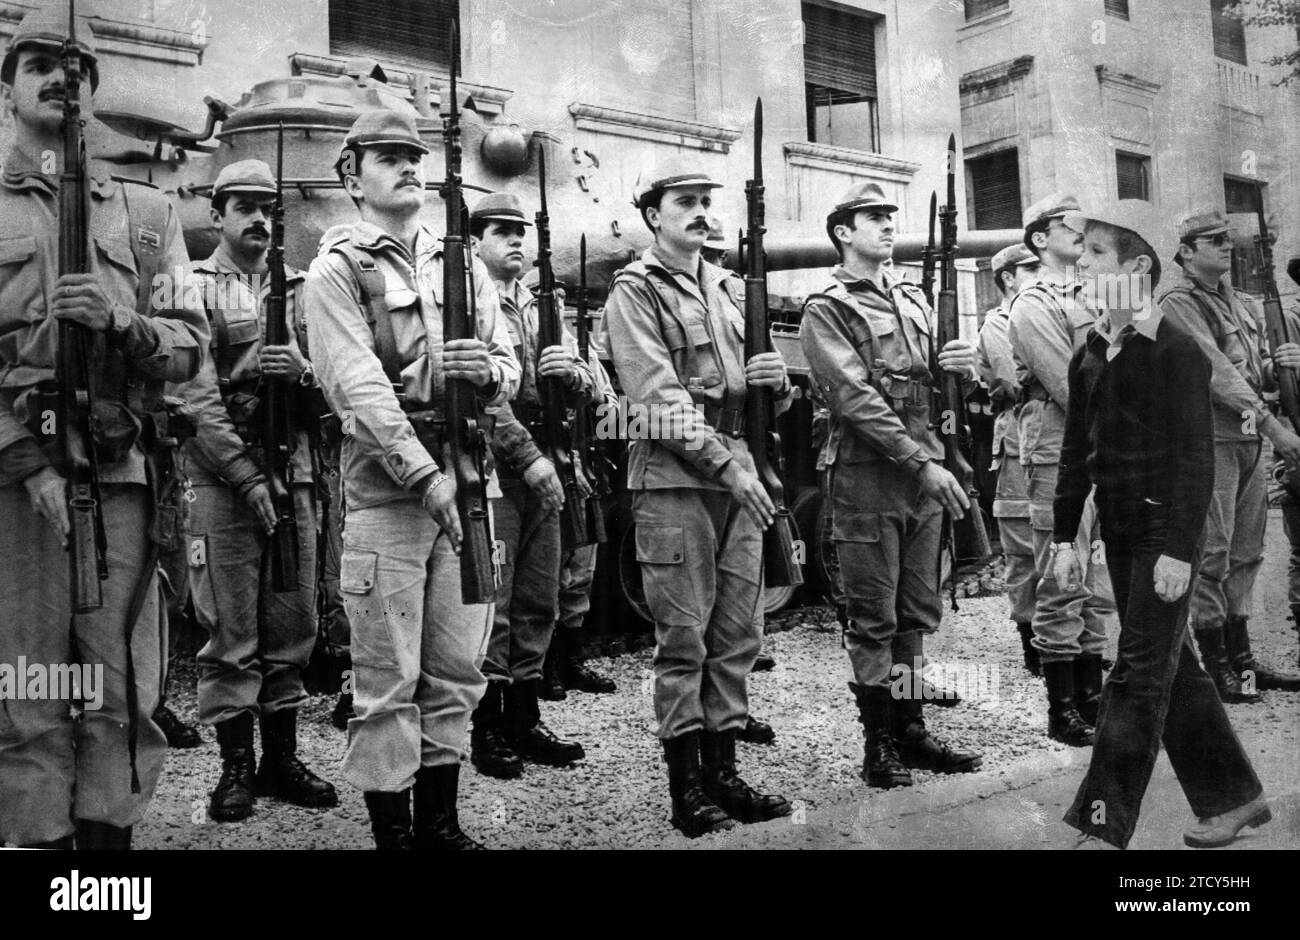 Madrid, 06.11.1977. Prinz Felipe, zu seinem Besuch in der höheren Polytechnischen Schule der Armee. Auf dem Bild sieht er den Wächter. Quelle: Album/Archivo ABC Stockfoto